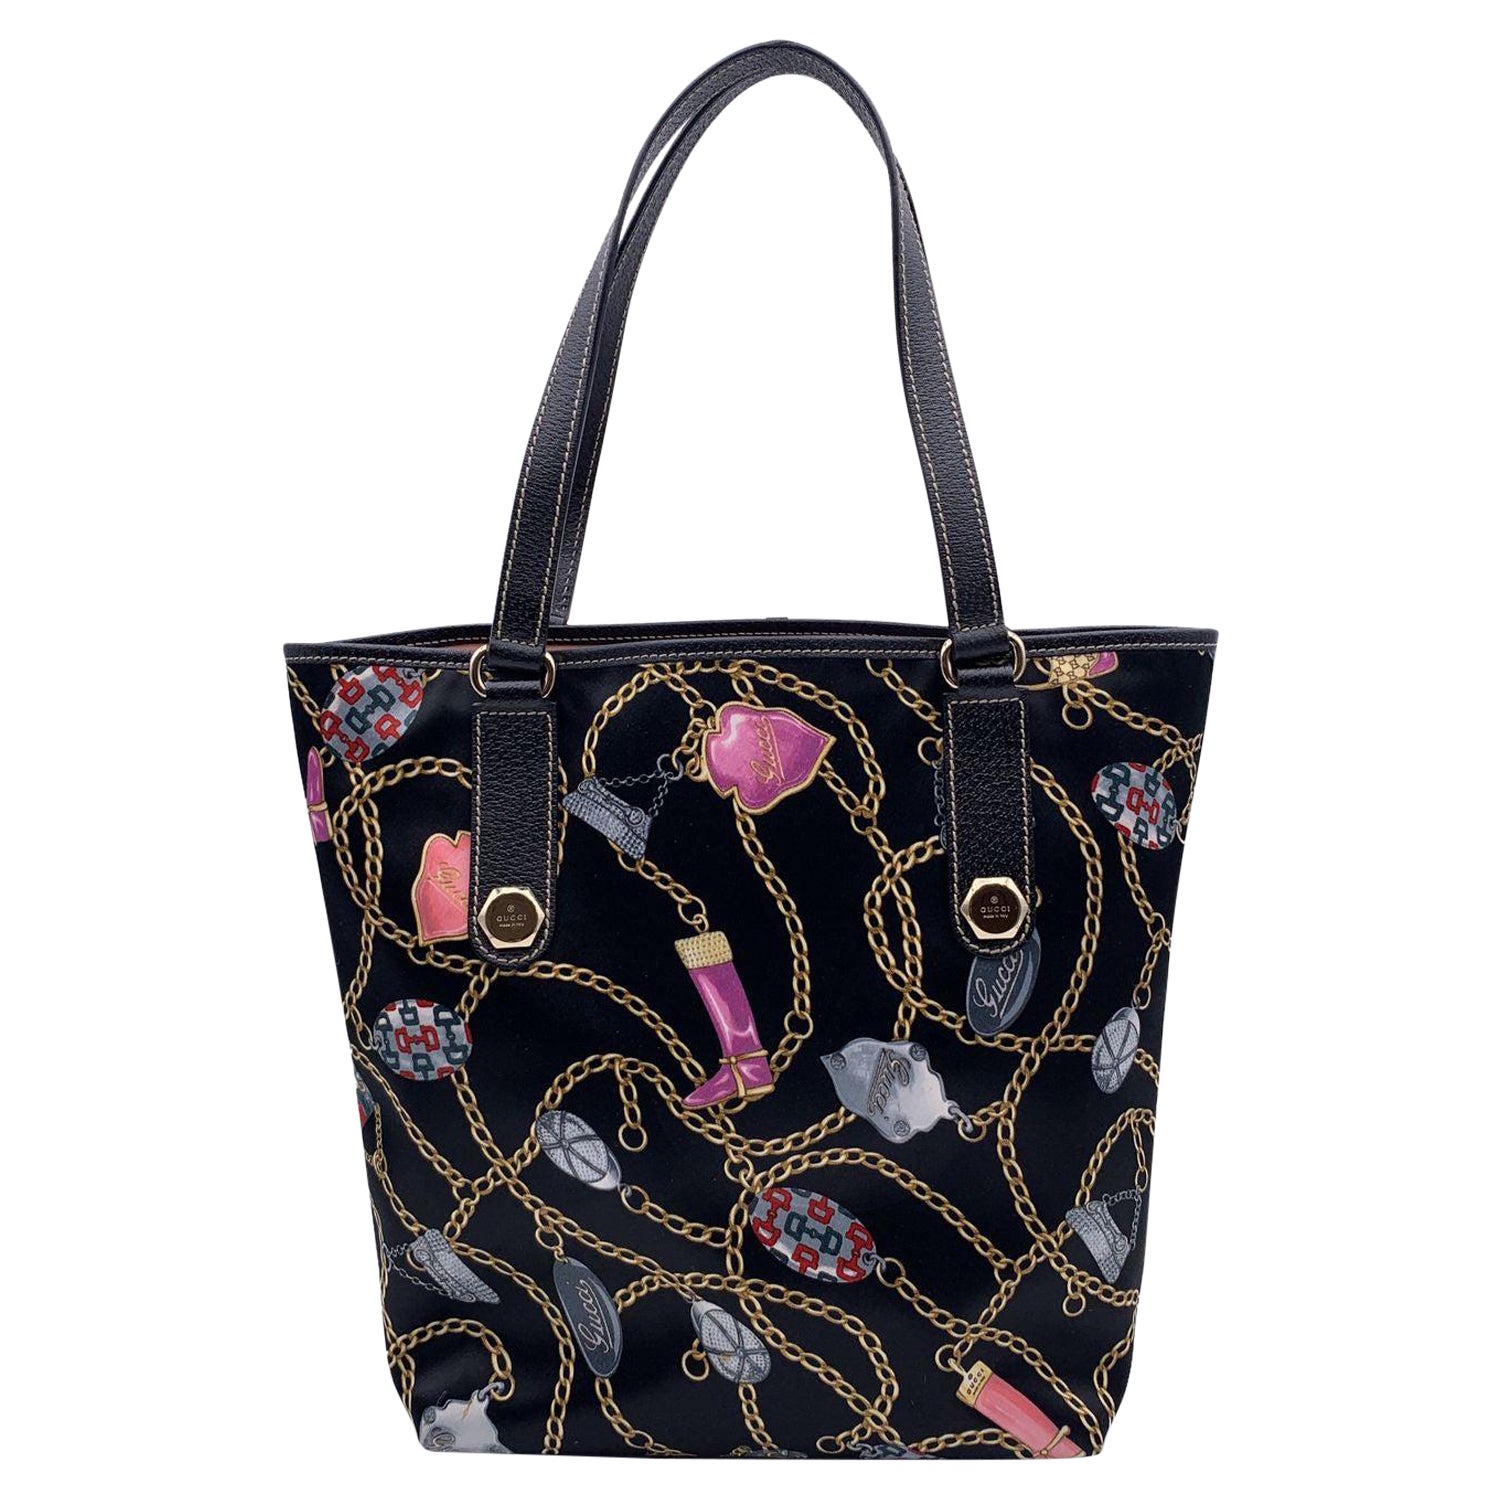 Gucci Black Multicolor Satin Charms cnad Chain Print Tote Bag